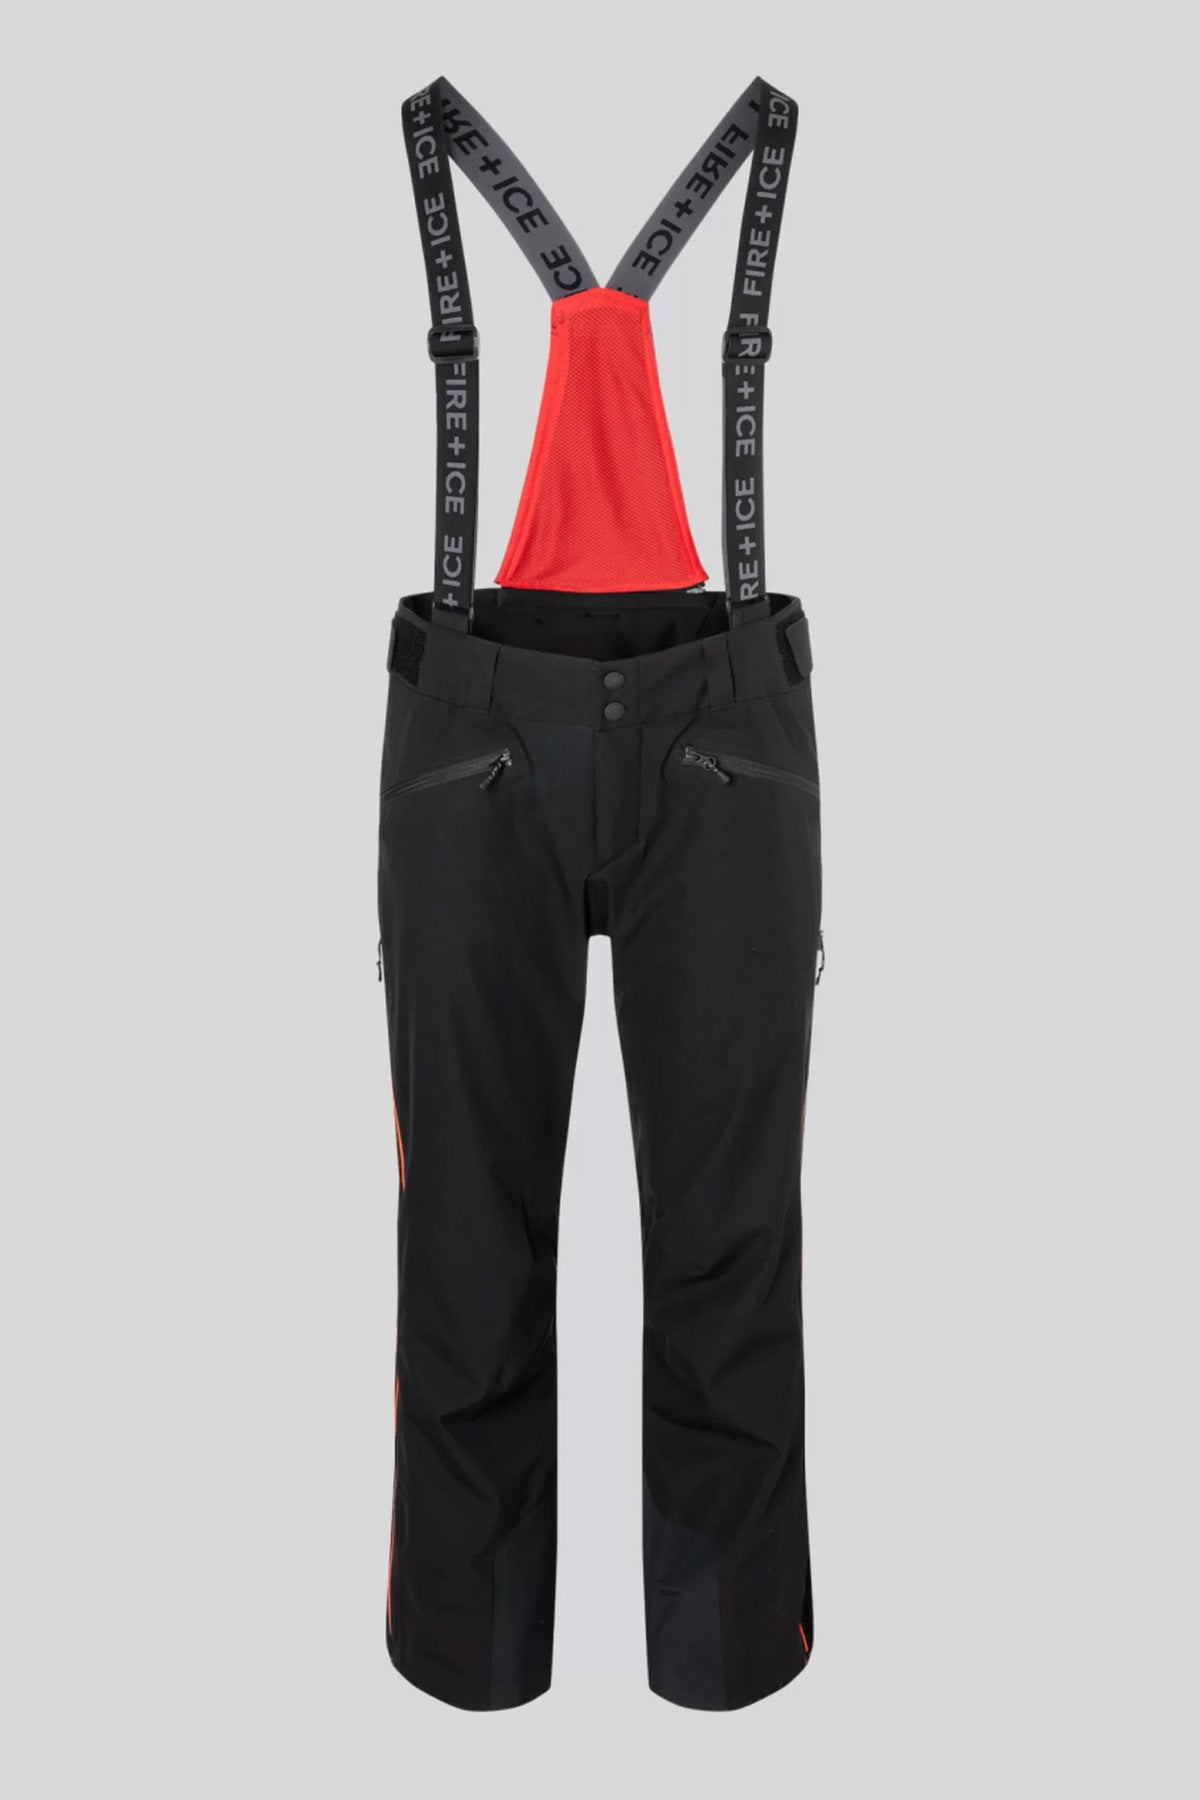 Bogner Gable Fire Ice Askılı Kayak Pantolonu-Libas Trendy Fashion Store